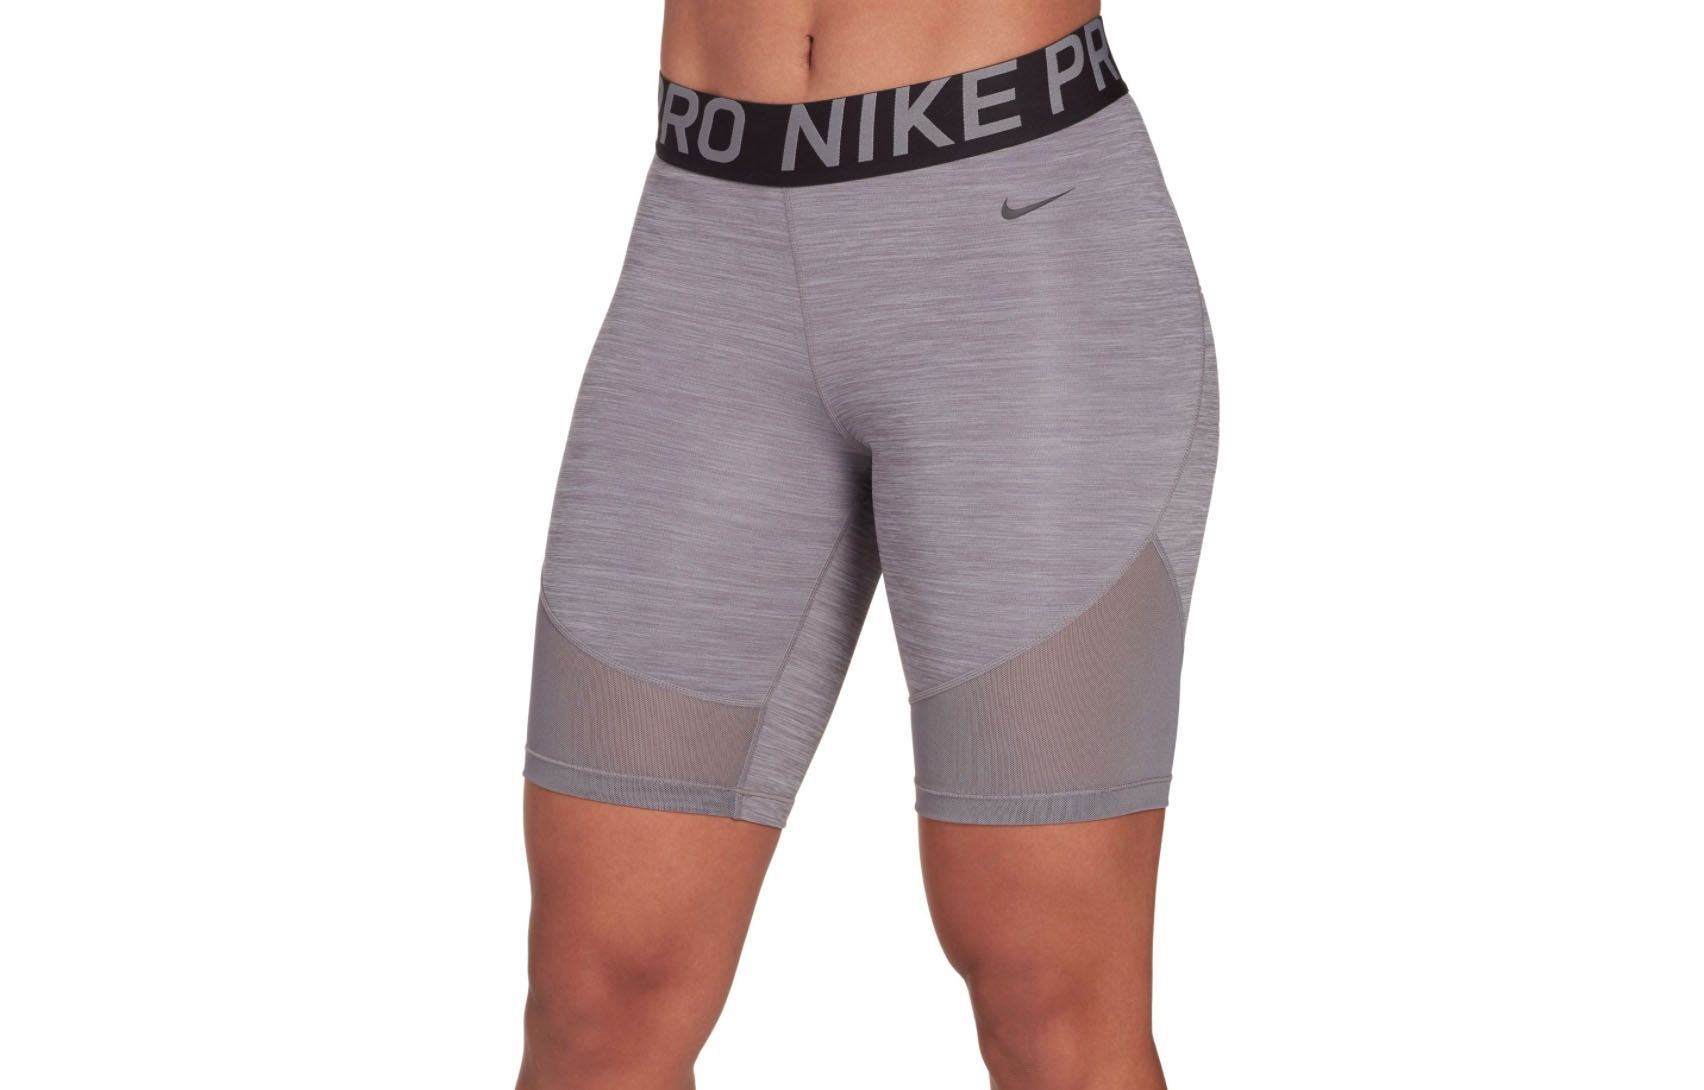 8 inch nike pro shorts